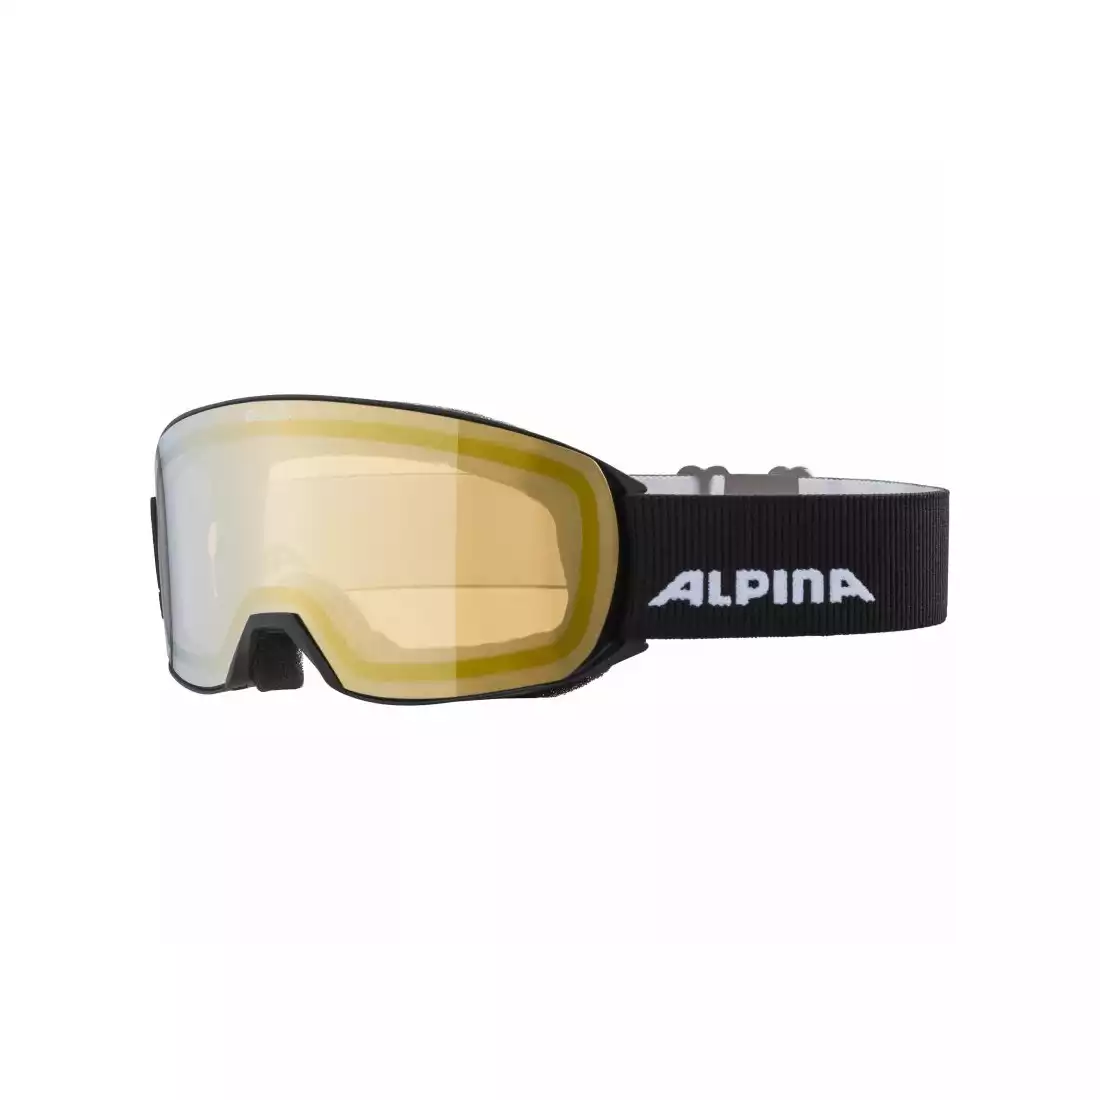 ALPINA GOGLE M40 NAKISKA BLACK szkło HM GOLD new 2021 A7280831